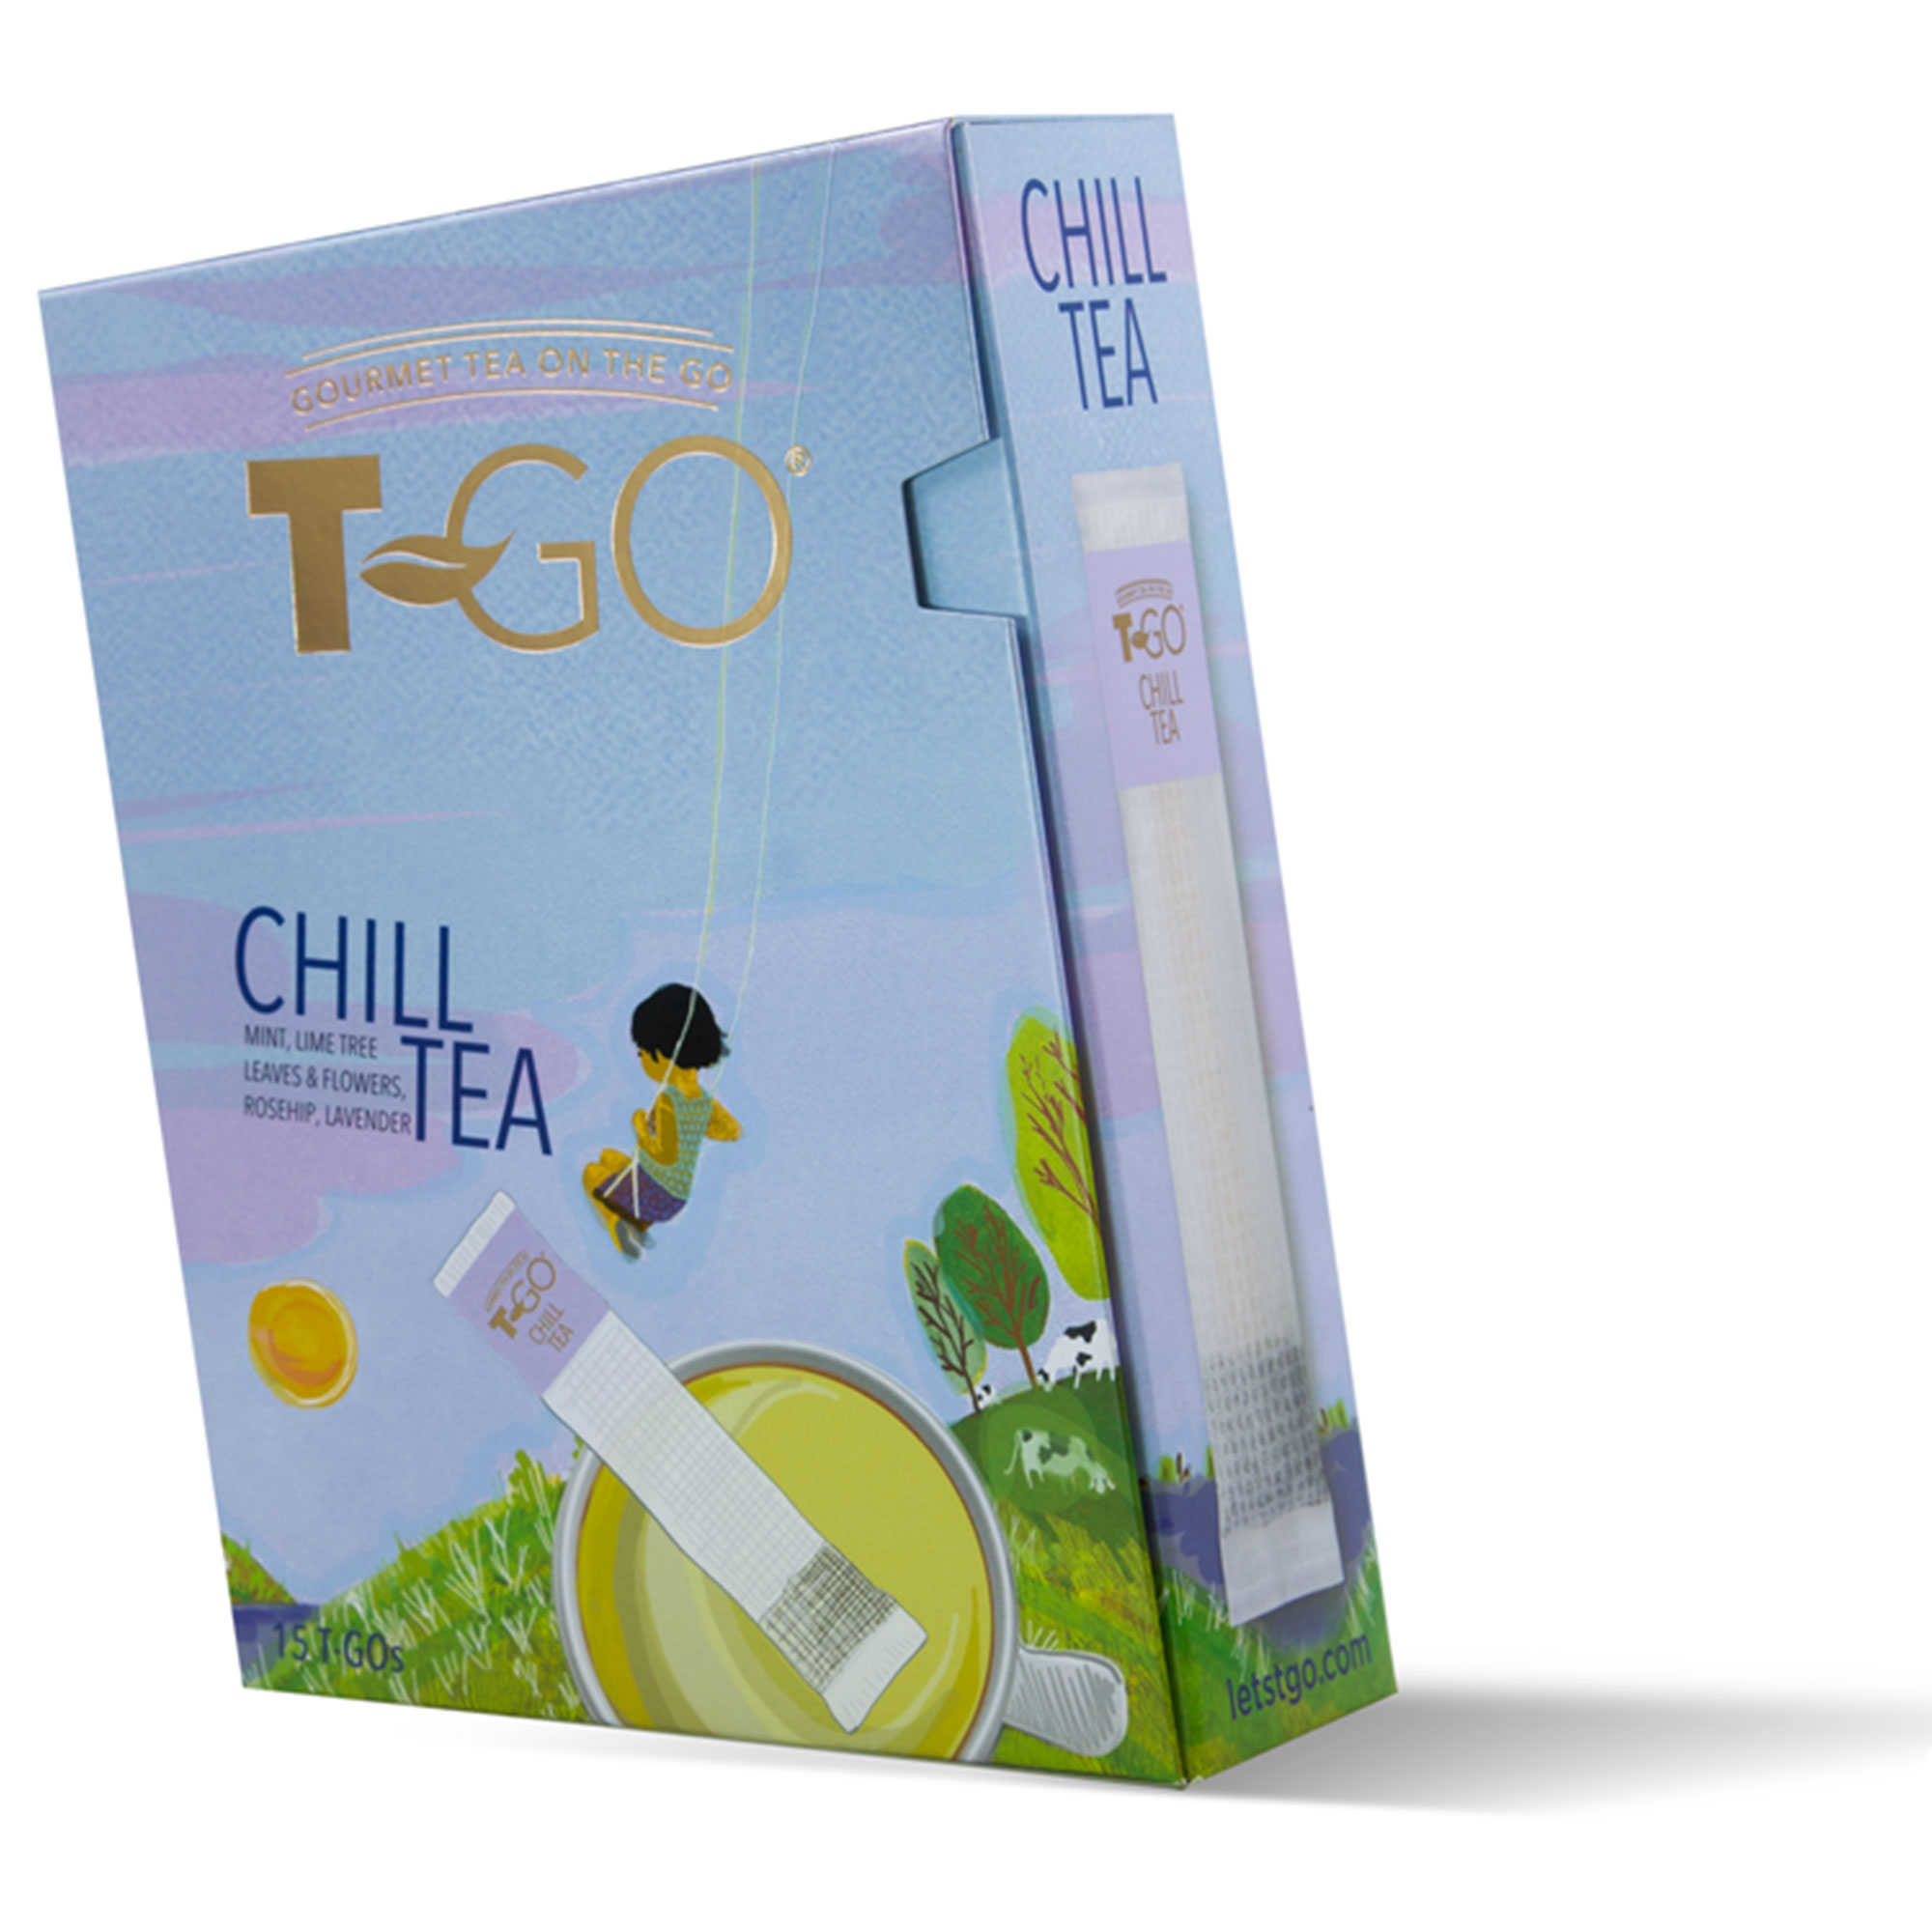 T-Go Chill Tea